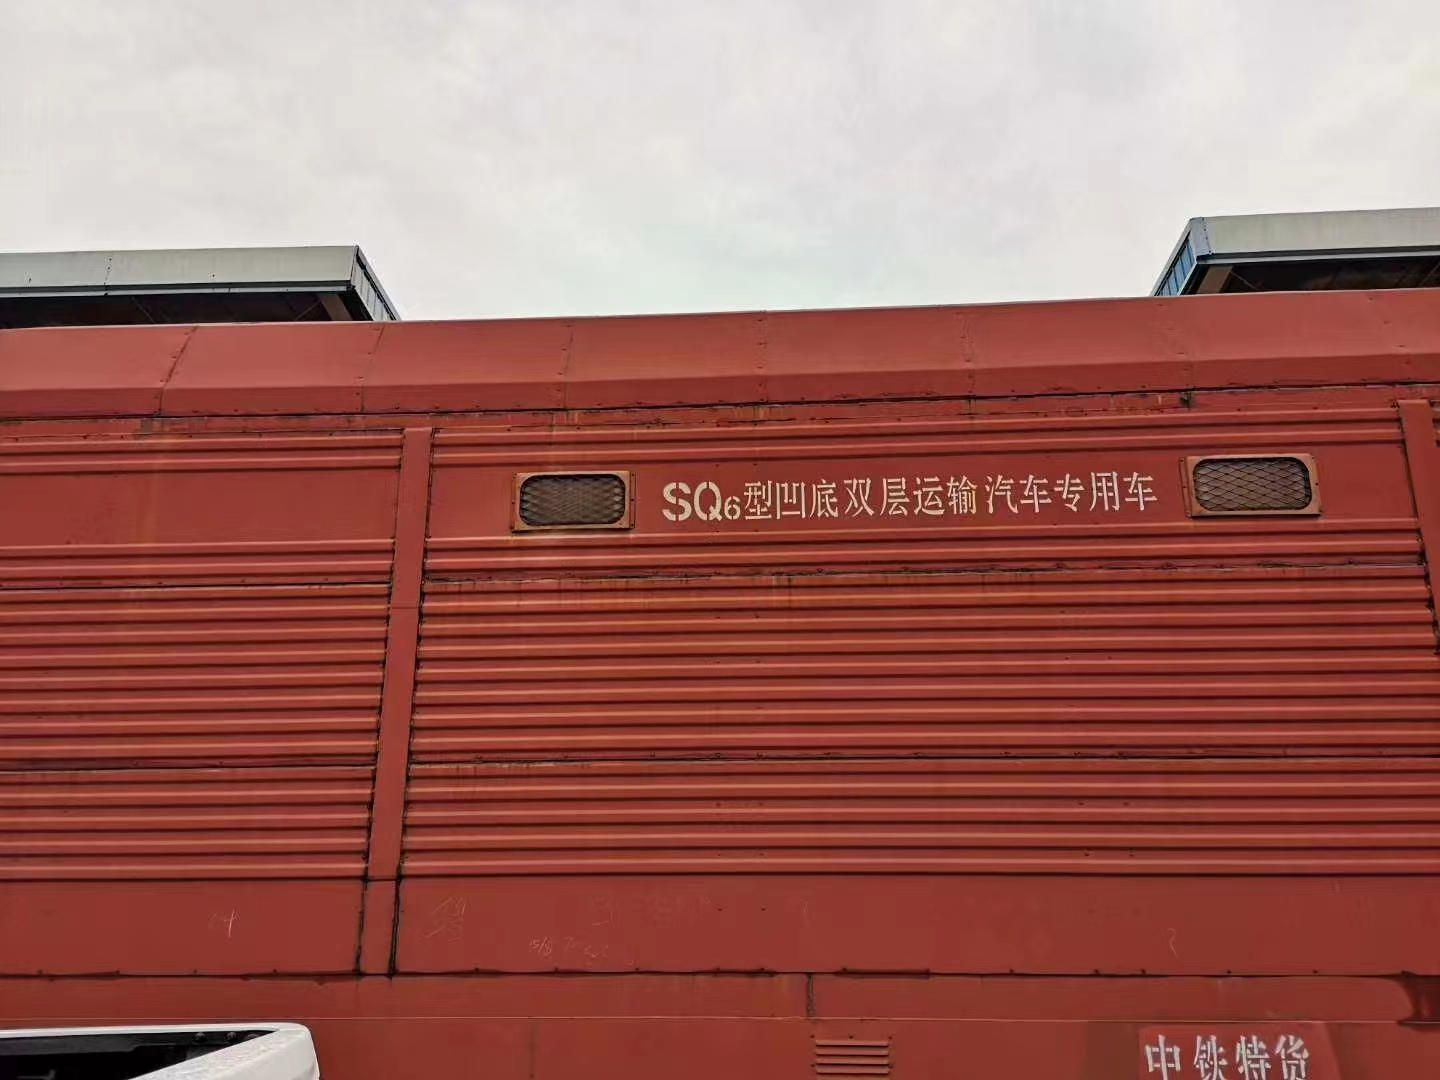 广州铁路托运汽车  铁路运输私家车  铁路物流汽车  铁路集装箱运小车   广州到乌鲁木齐铁路拖车